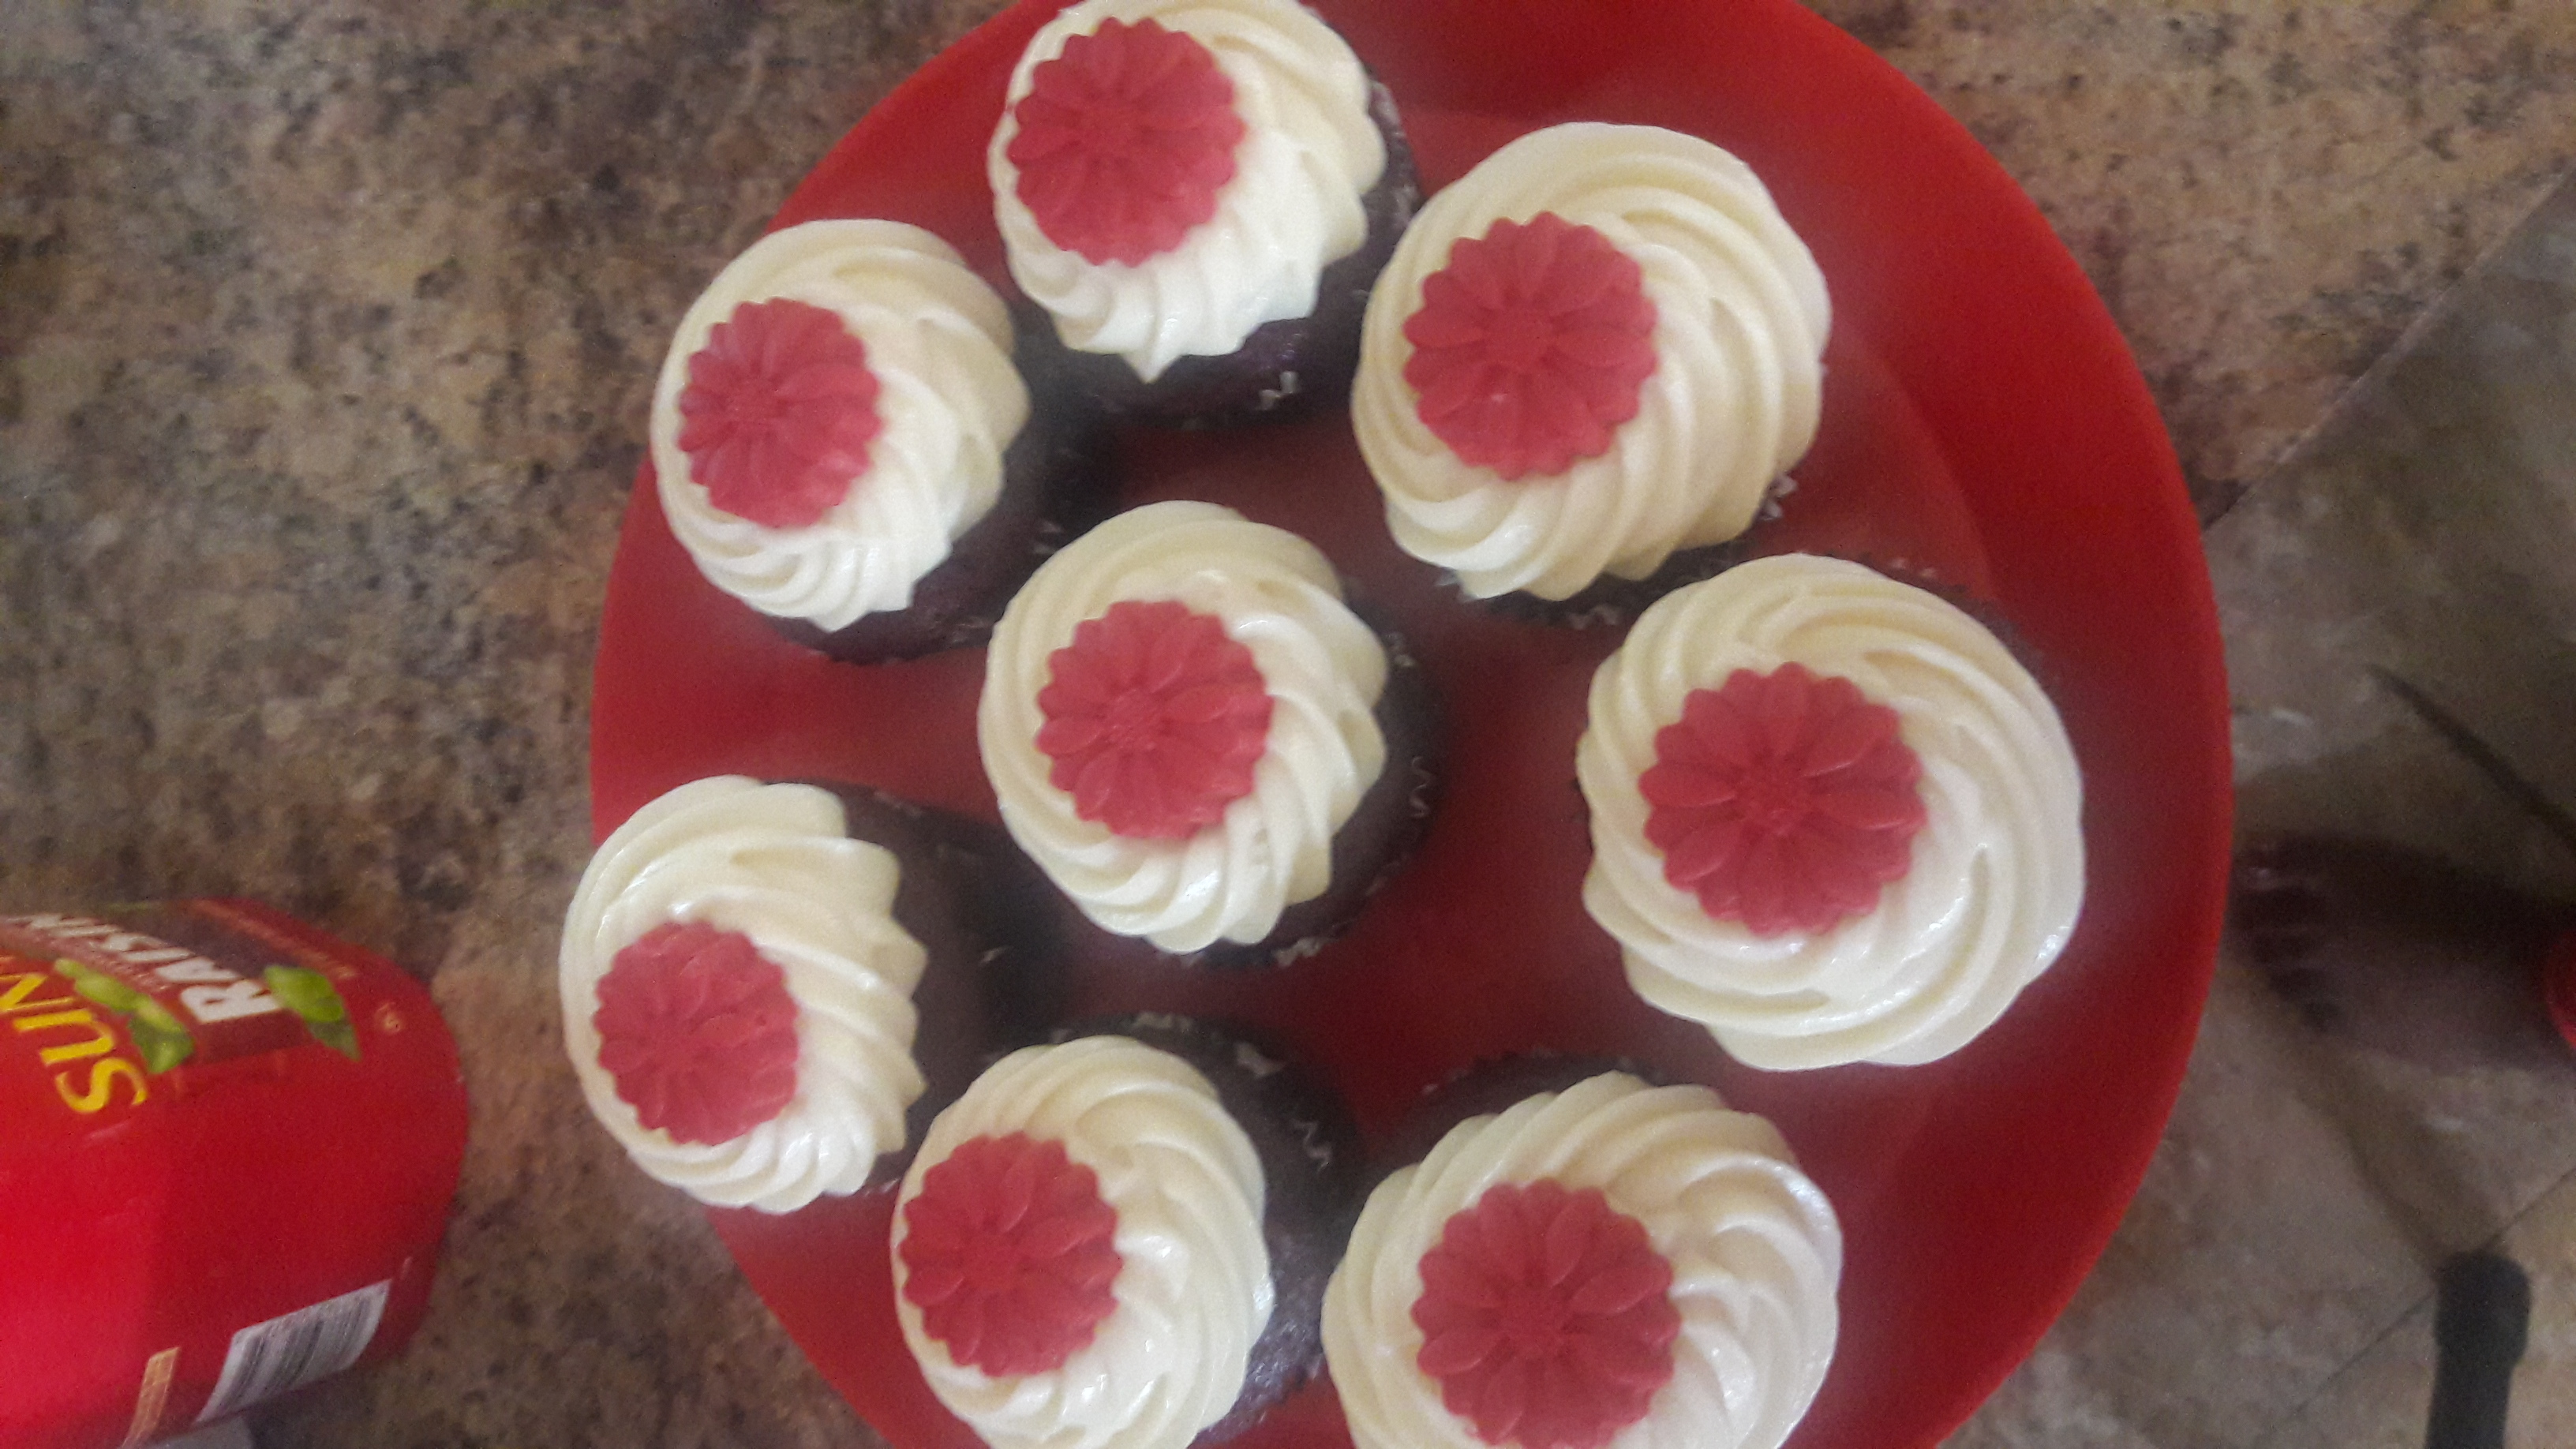 Red Velvet Cupcakes 